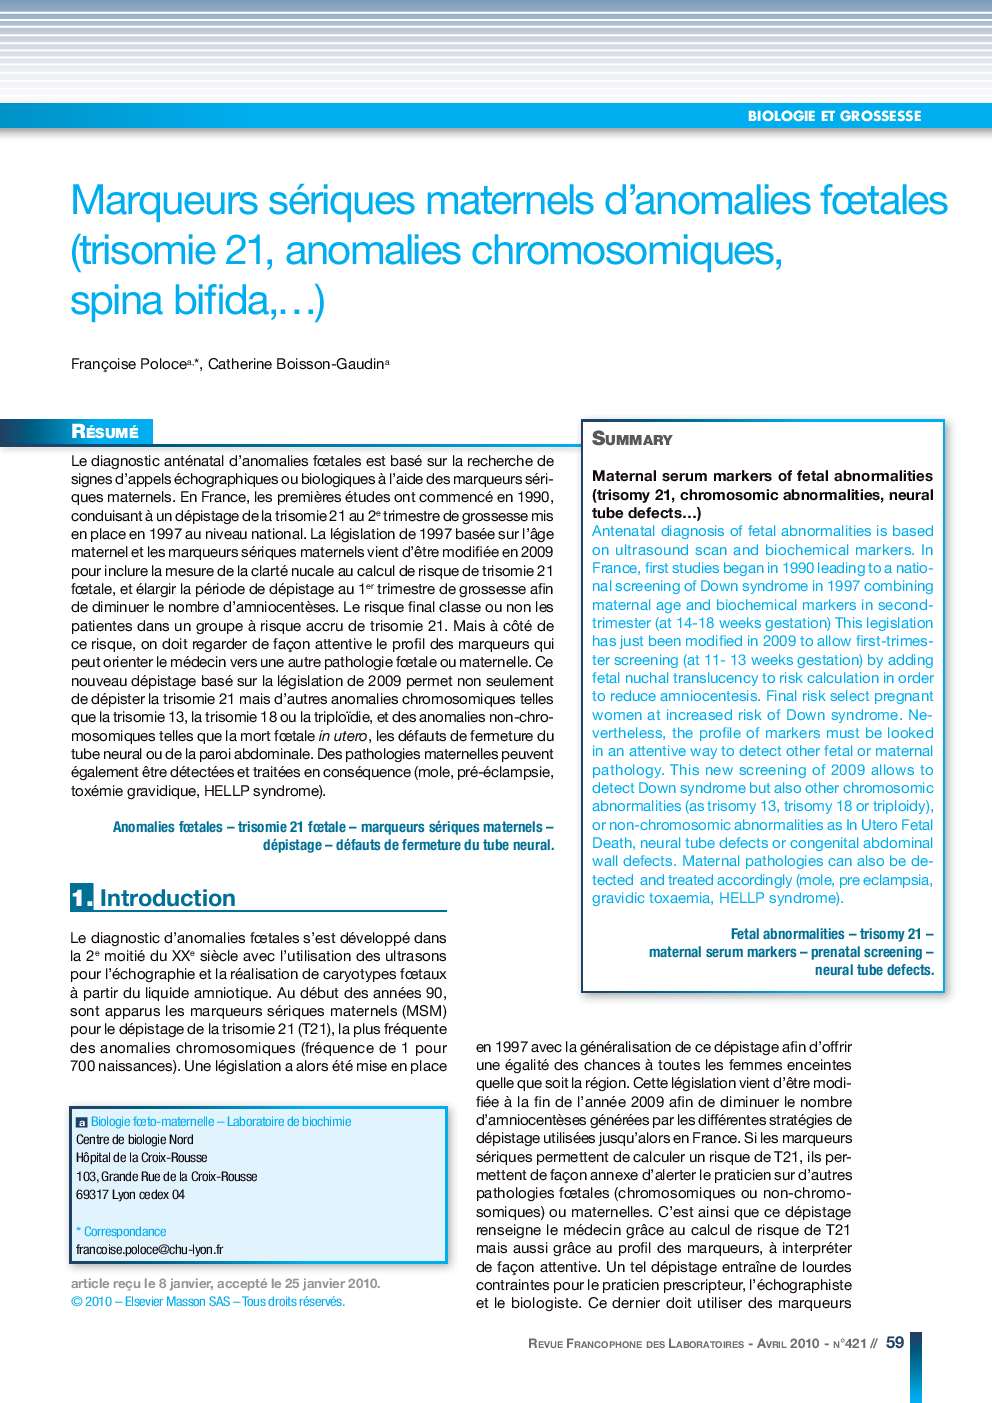 Marqueurs sériques maternels d'anomalies fÅtales (trisomie 21, anomalies chromosomiques, spina bifida,â¦)